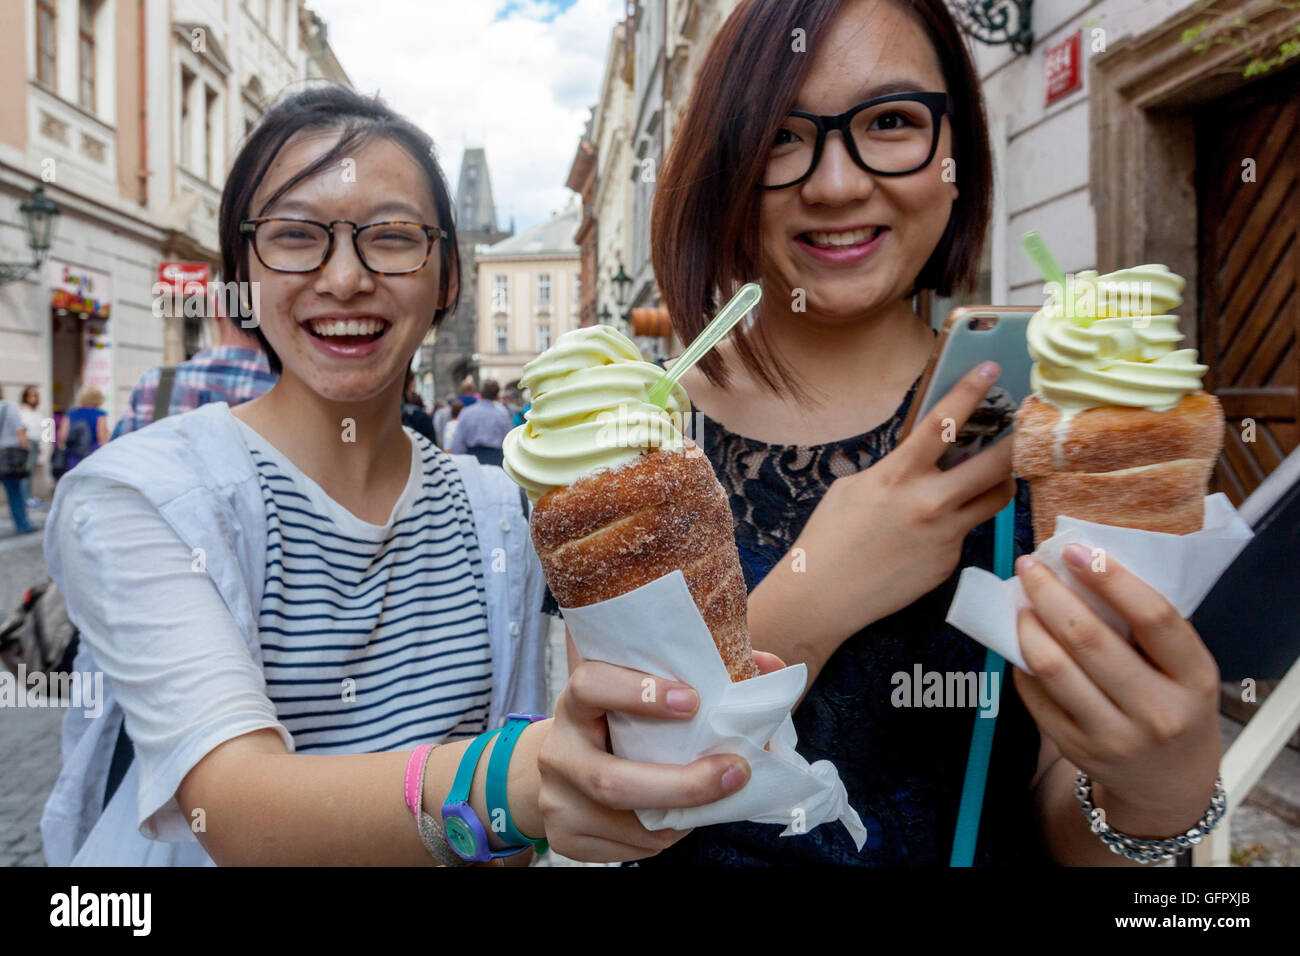 Trdelnik mit Eis, traditionelle tschechische Süßigkeiten für Sommertage, Celetna Straße Altstadt, Junge asiatische Frauen Touristen Prag Tourismus Tschechien Stockfoto